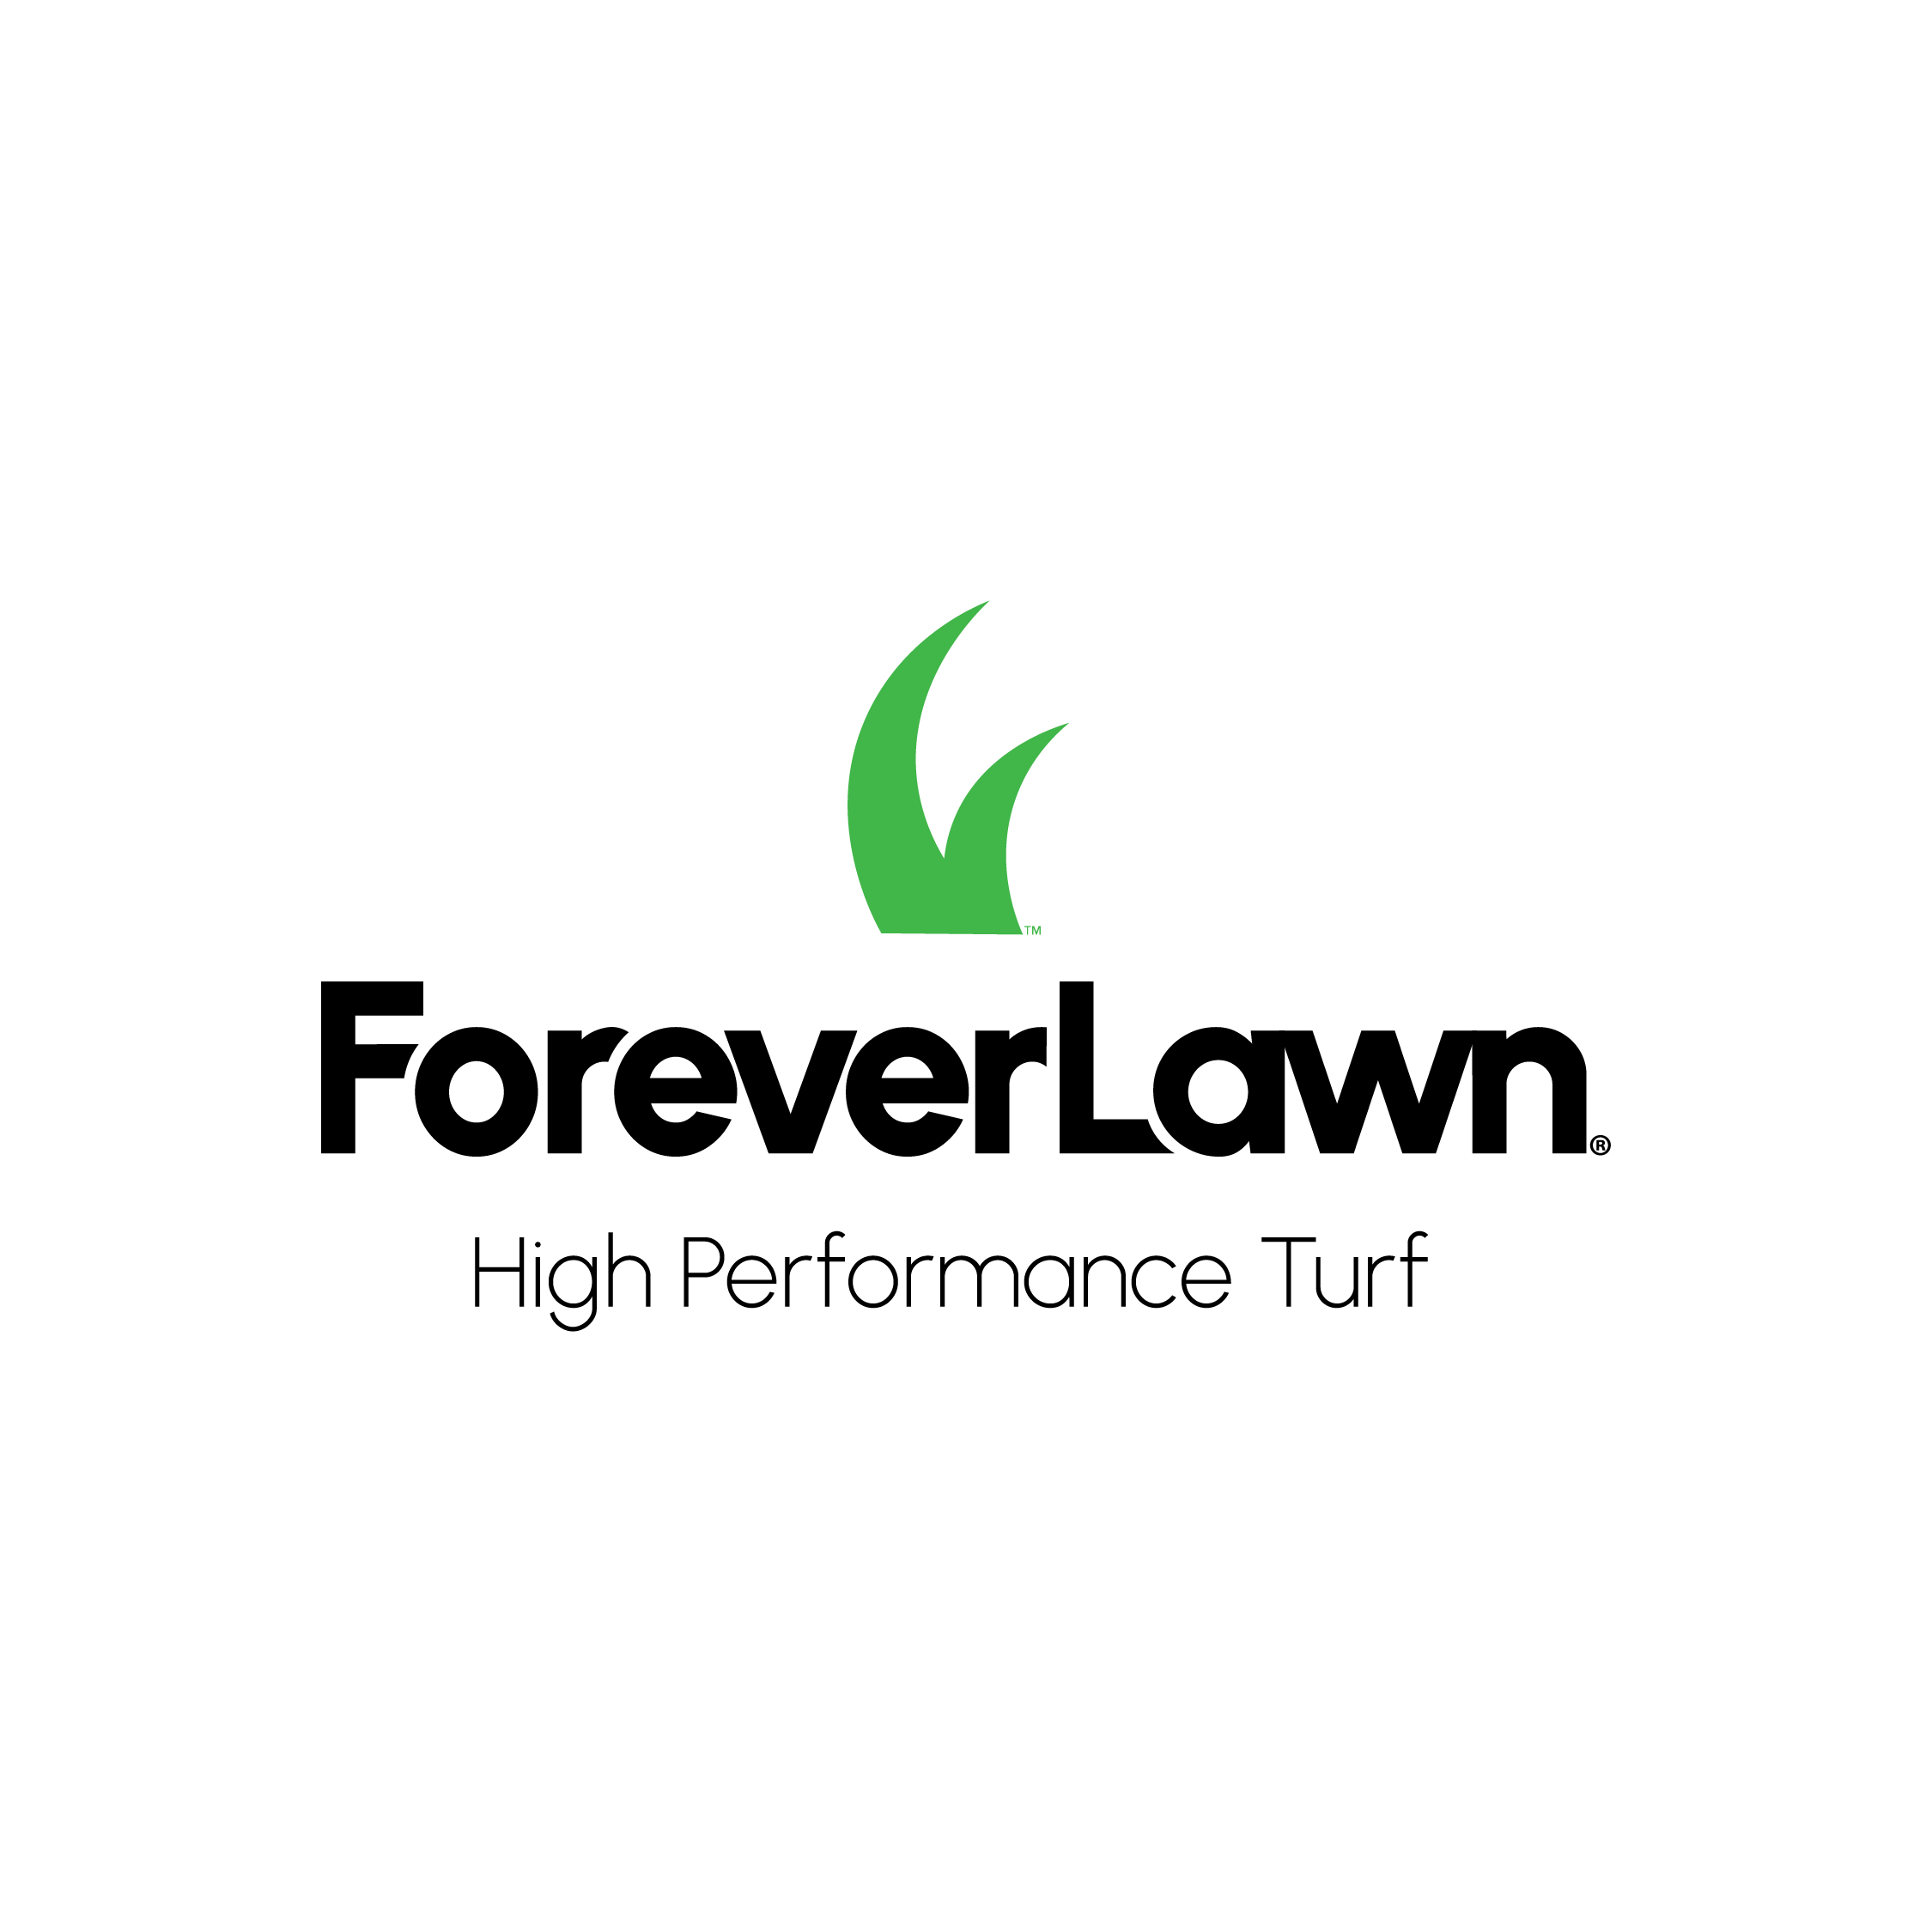 ForeverLawn Brand Redesign